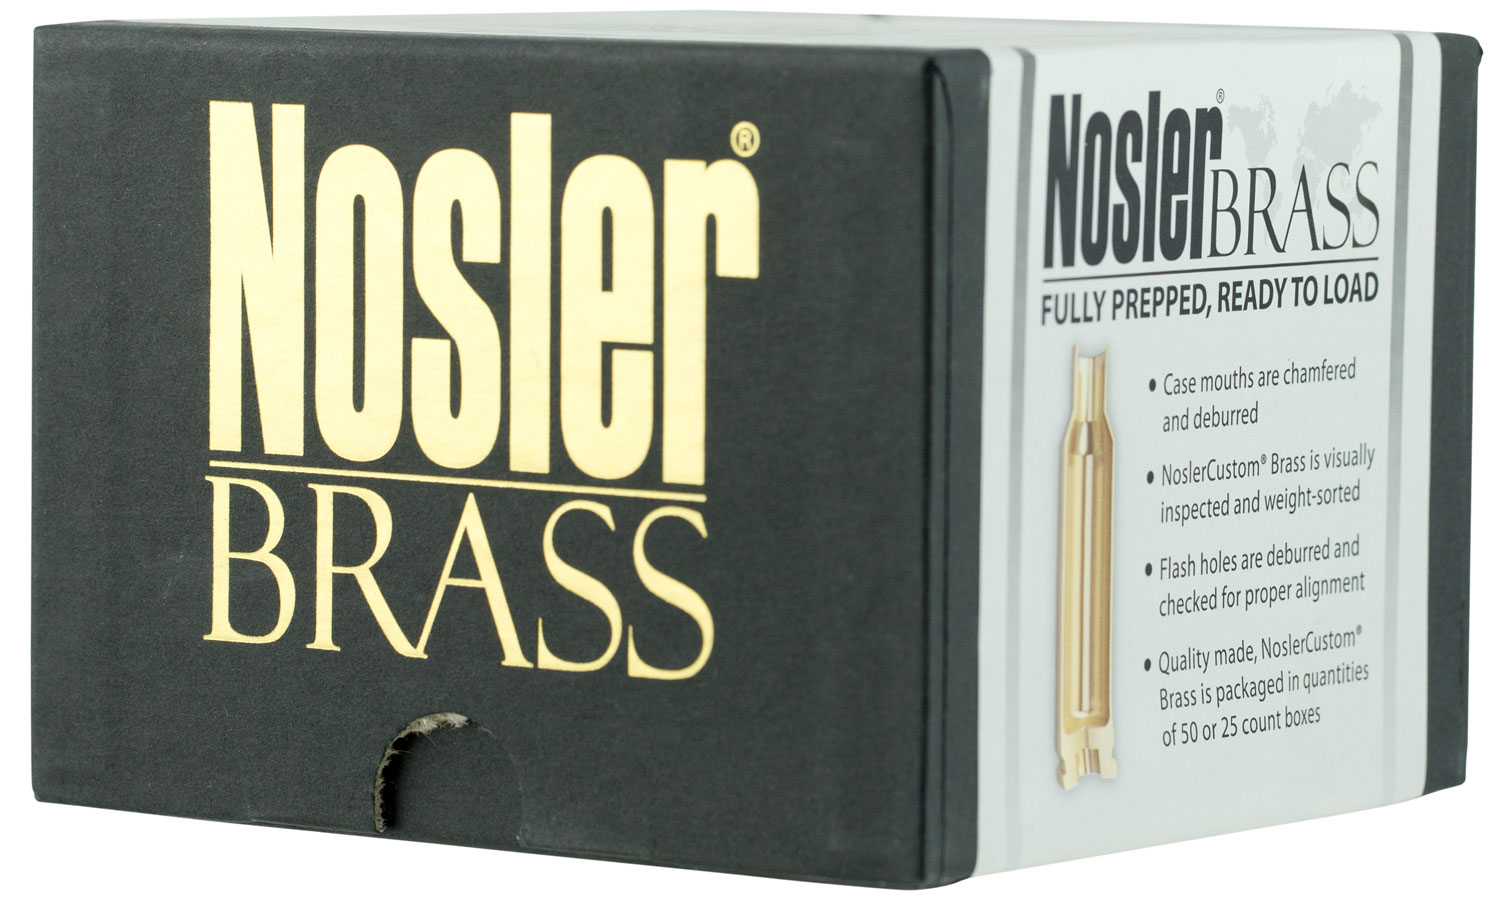 Nosler 10067 Premium Brass Unprimed Cases 22 Nosler Rifle Brass 100 Per Box